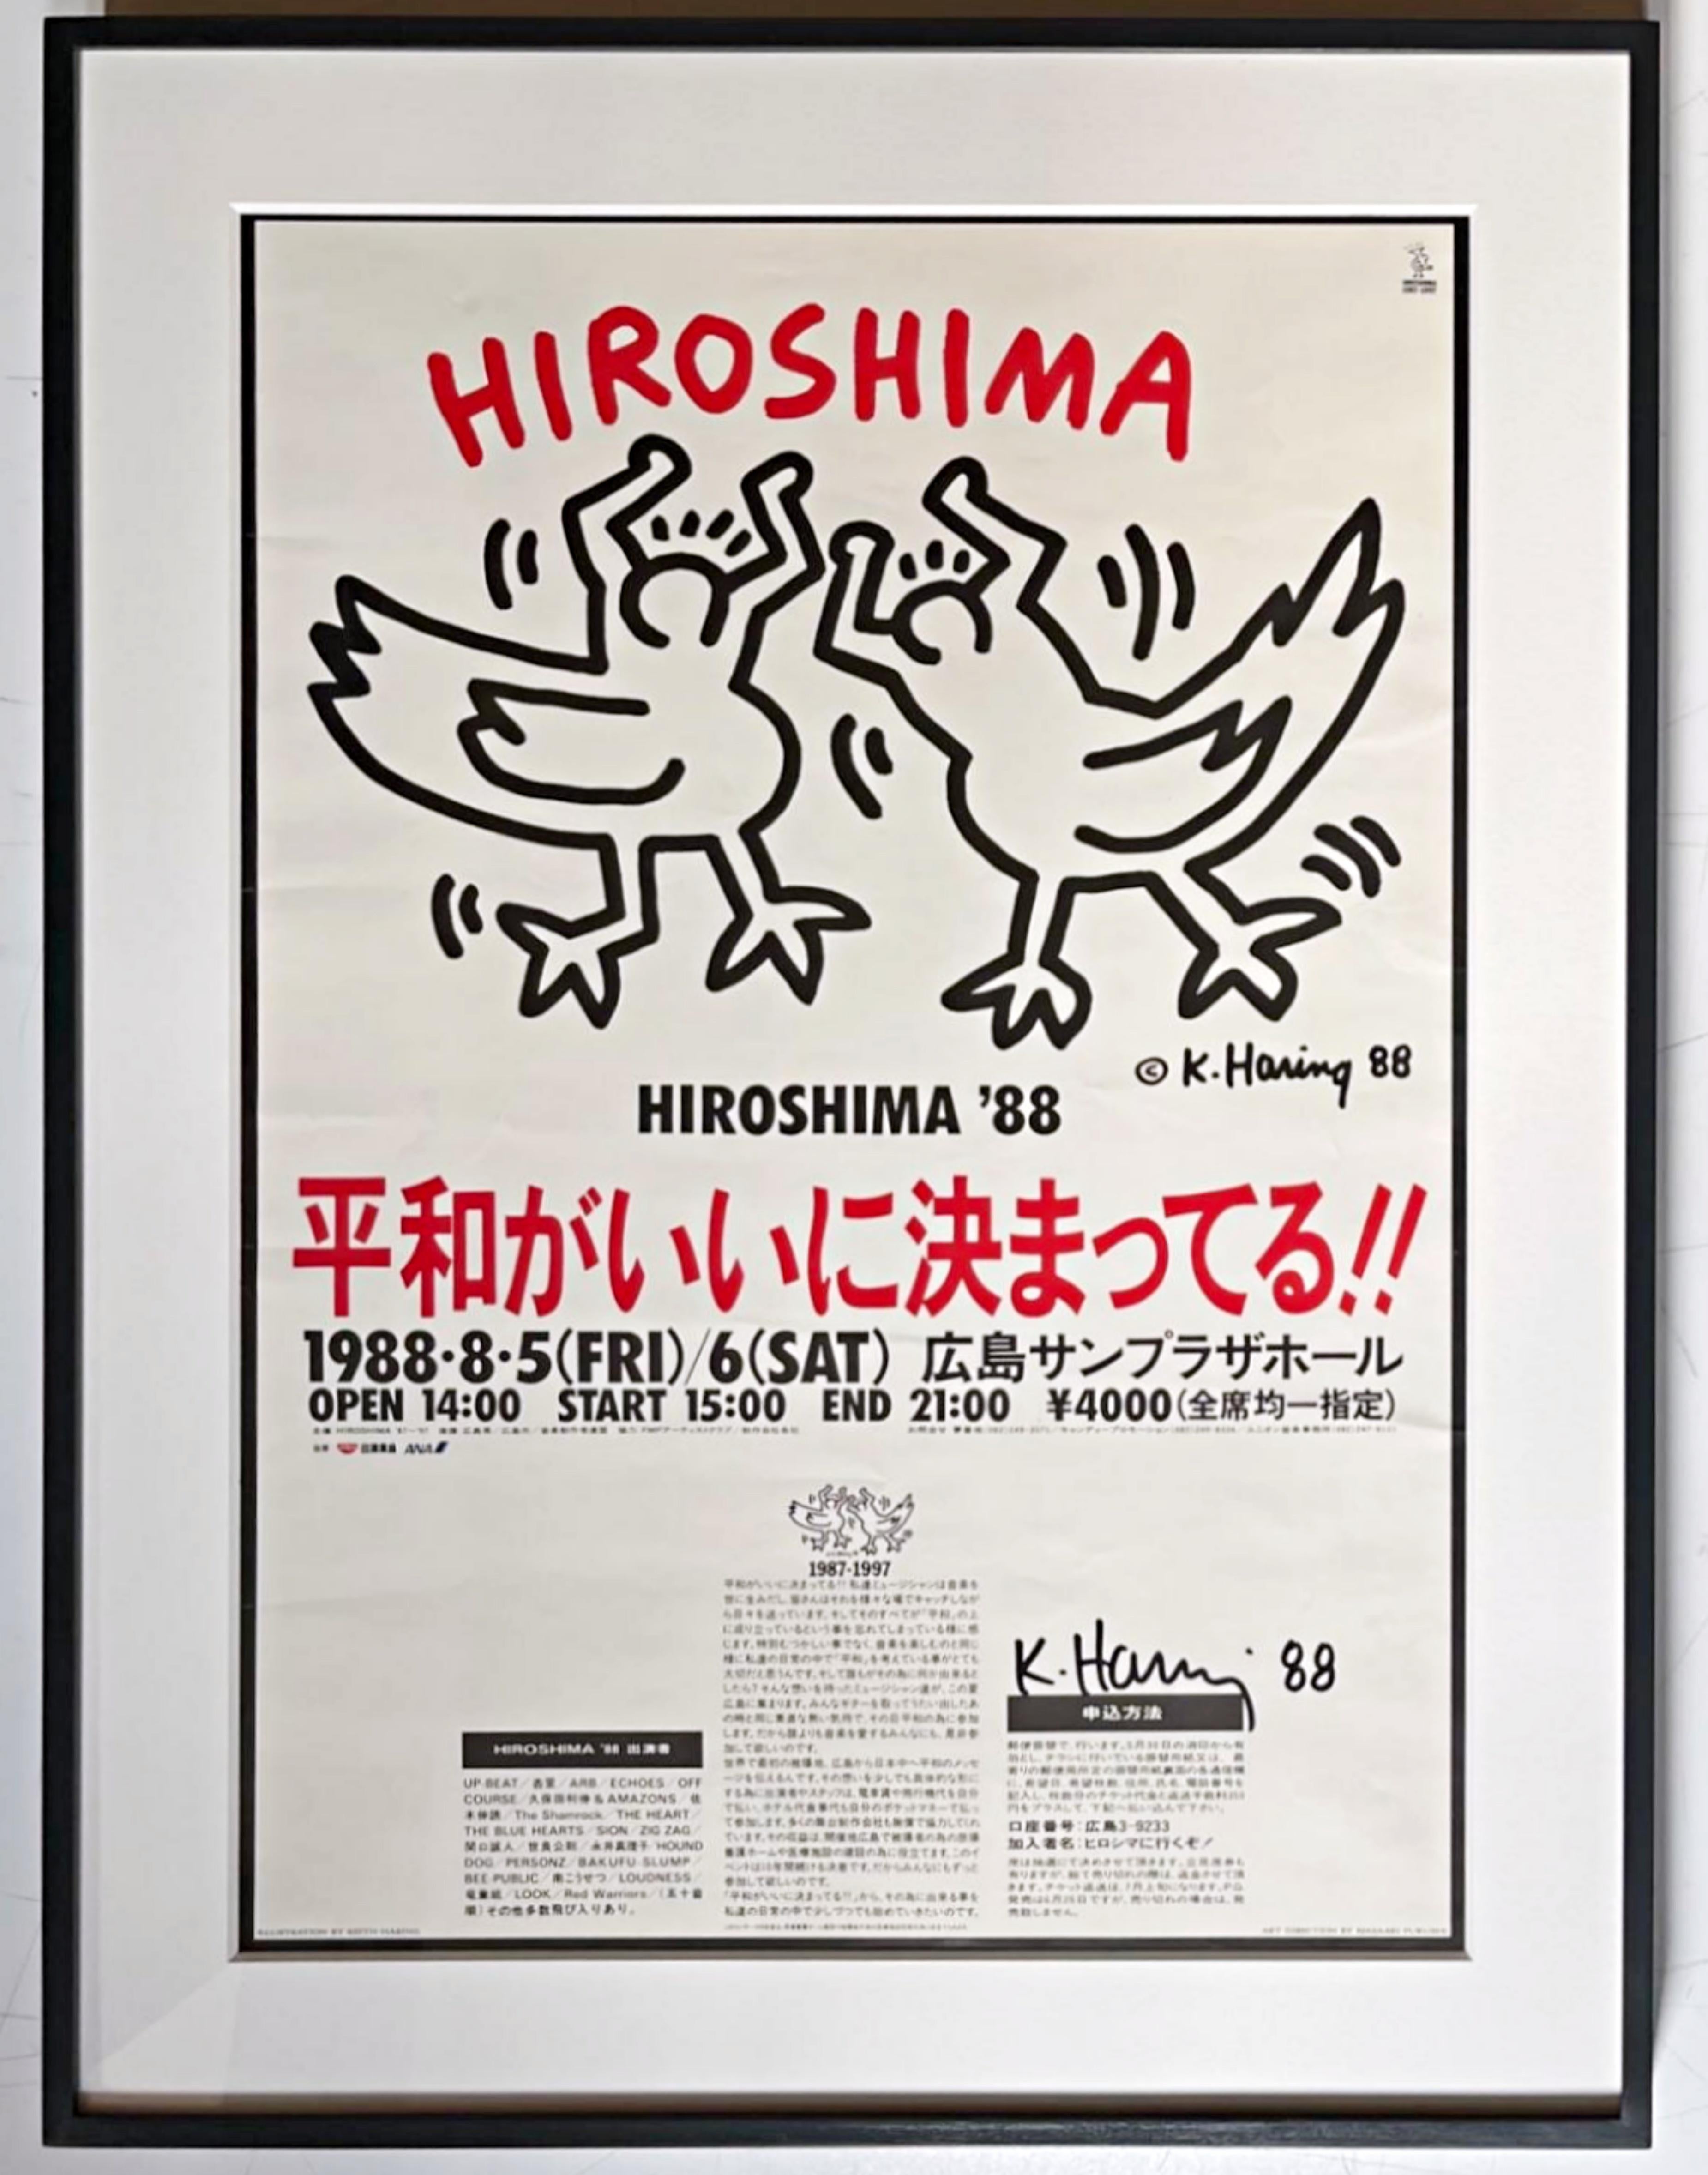 Keith Haring
Seltenes Poster zur Hiroshima-Friedensfeier (handsigniert von Keith Haring), aus der Patrick Eddington Collection, 1988
Original-Offsetlithografie (von Keith Haring eigens für Patrick Eddington handsigniert)
Signiert mit schwarzem